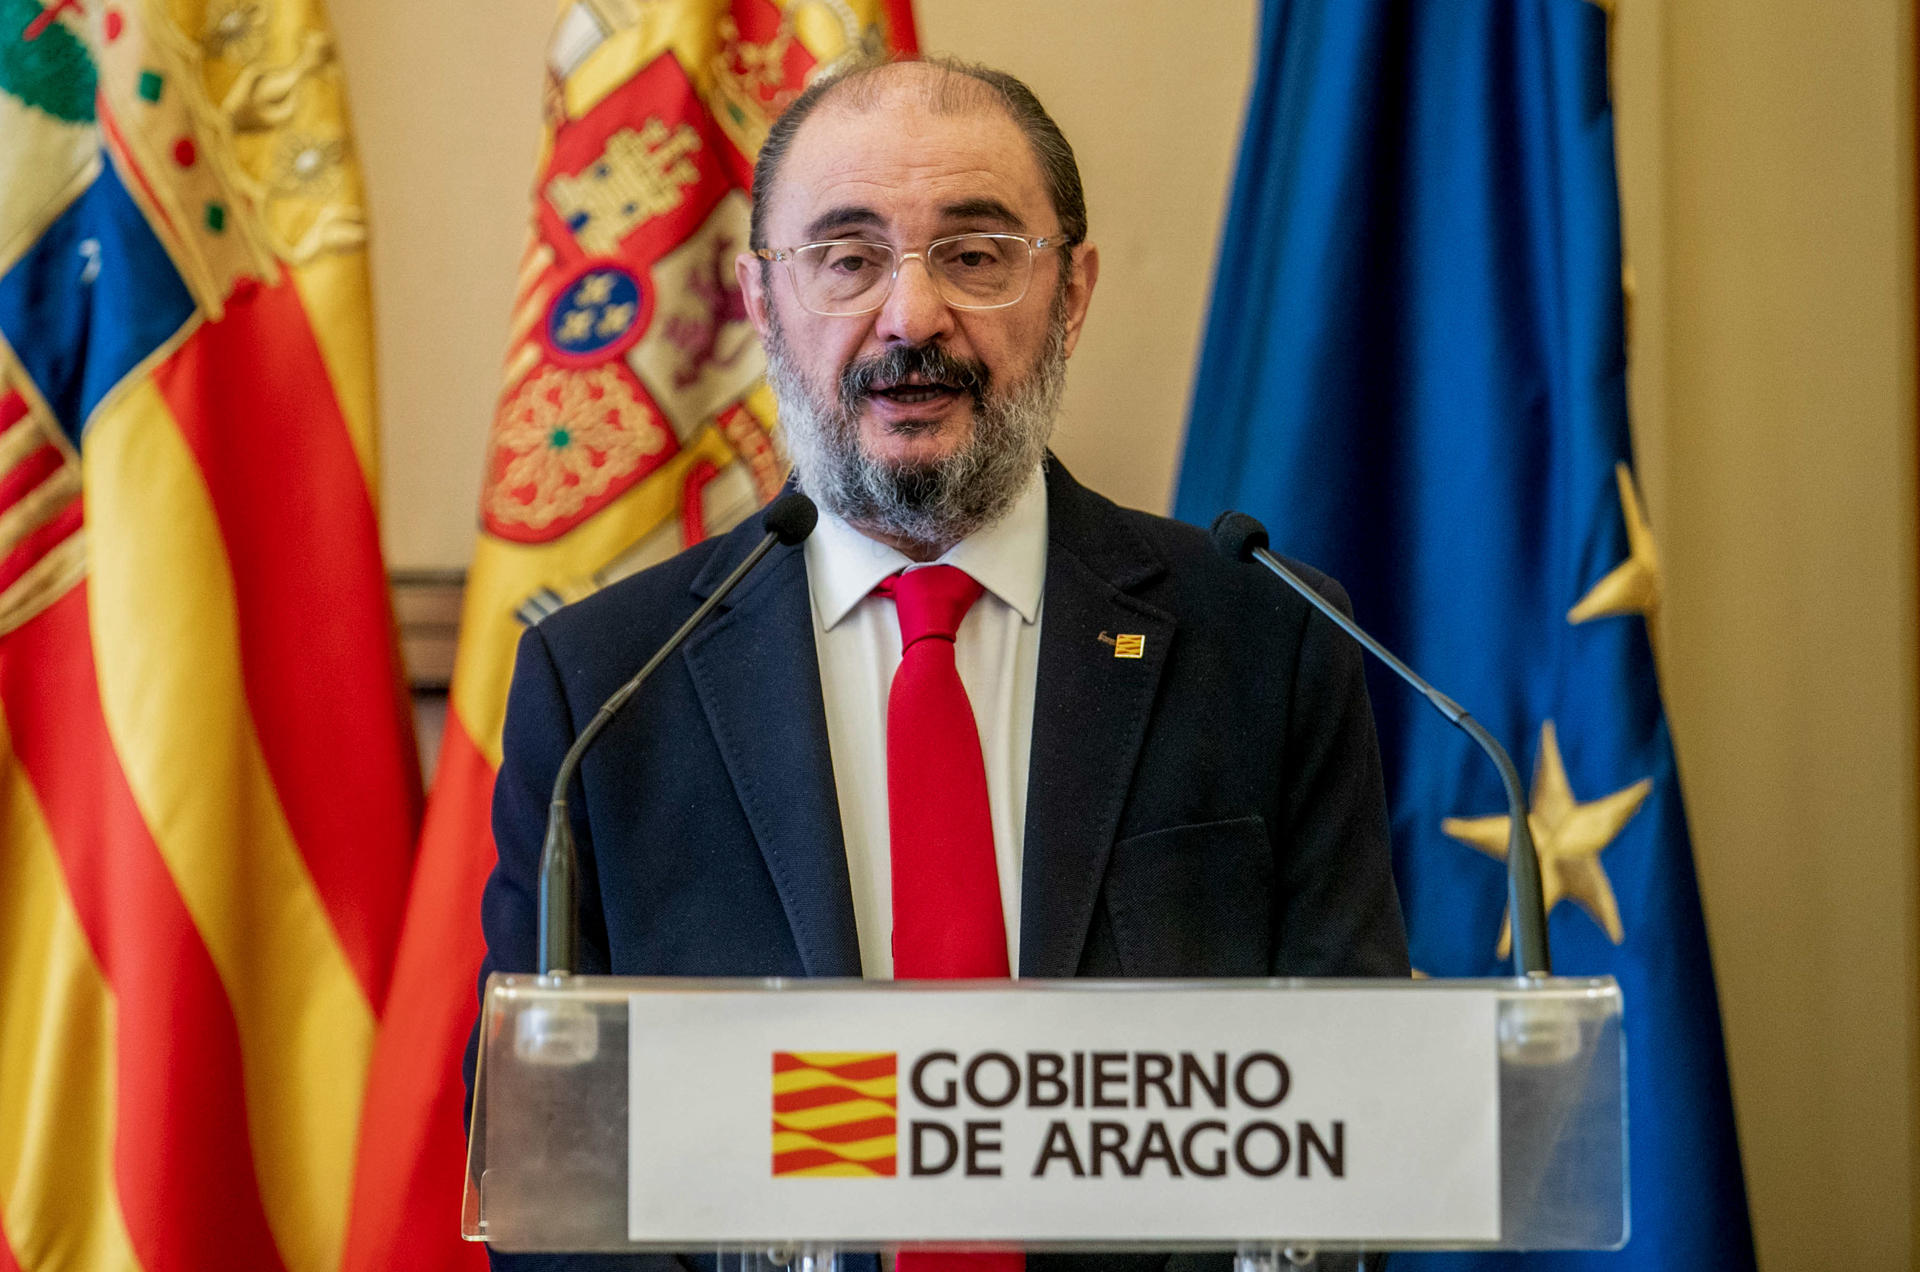 El presidente del Gobierno de Aragón, Javier Lambán, en una imagen de archivo. EFE/Javier Cebollada